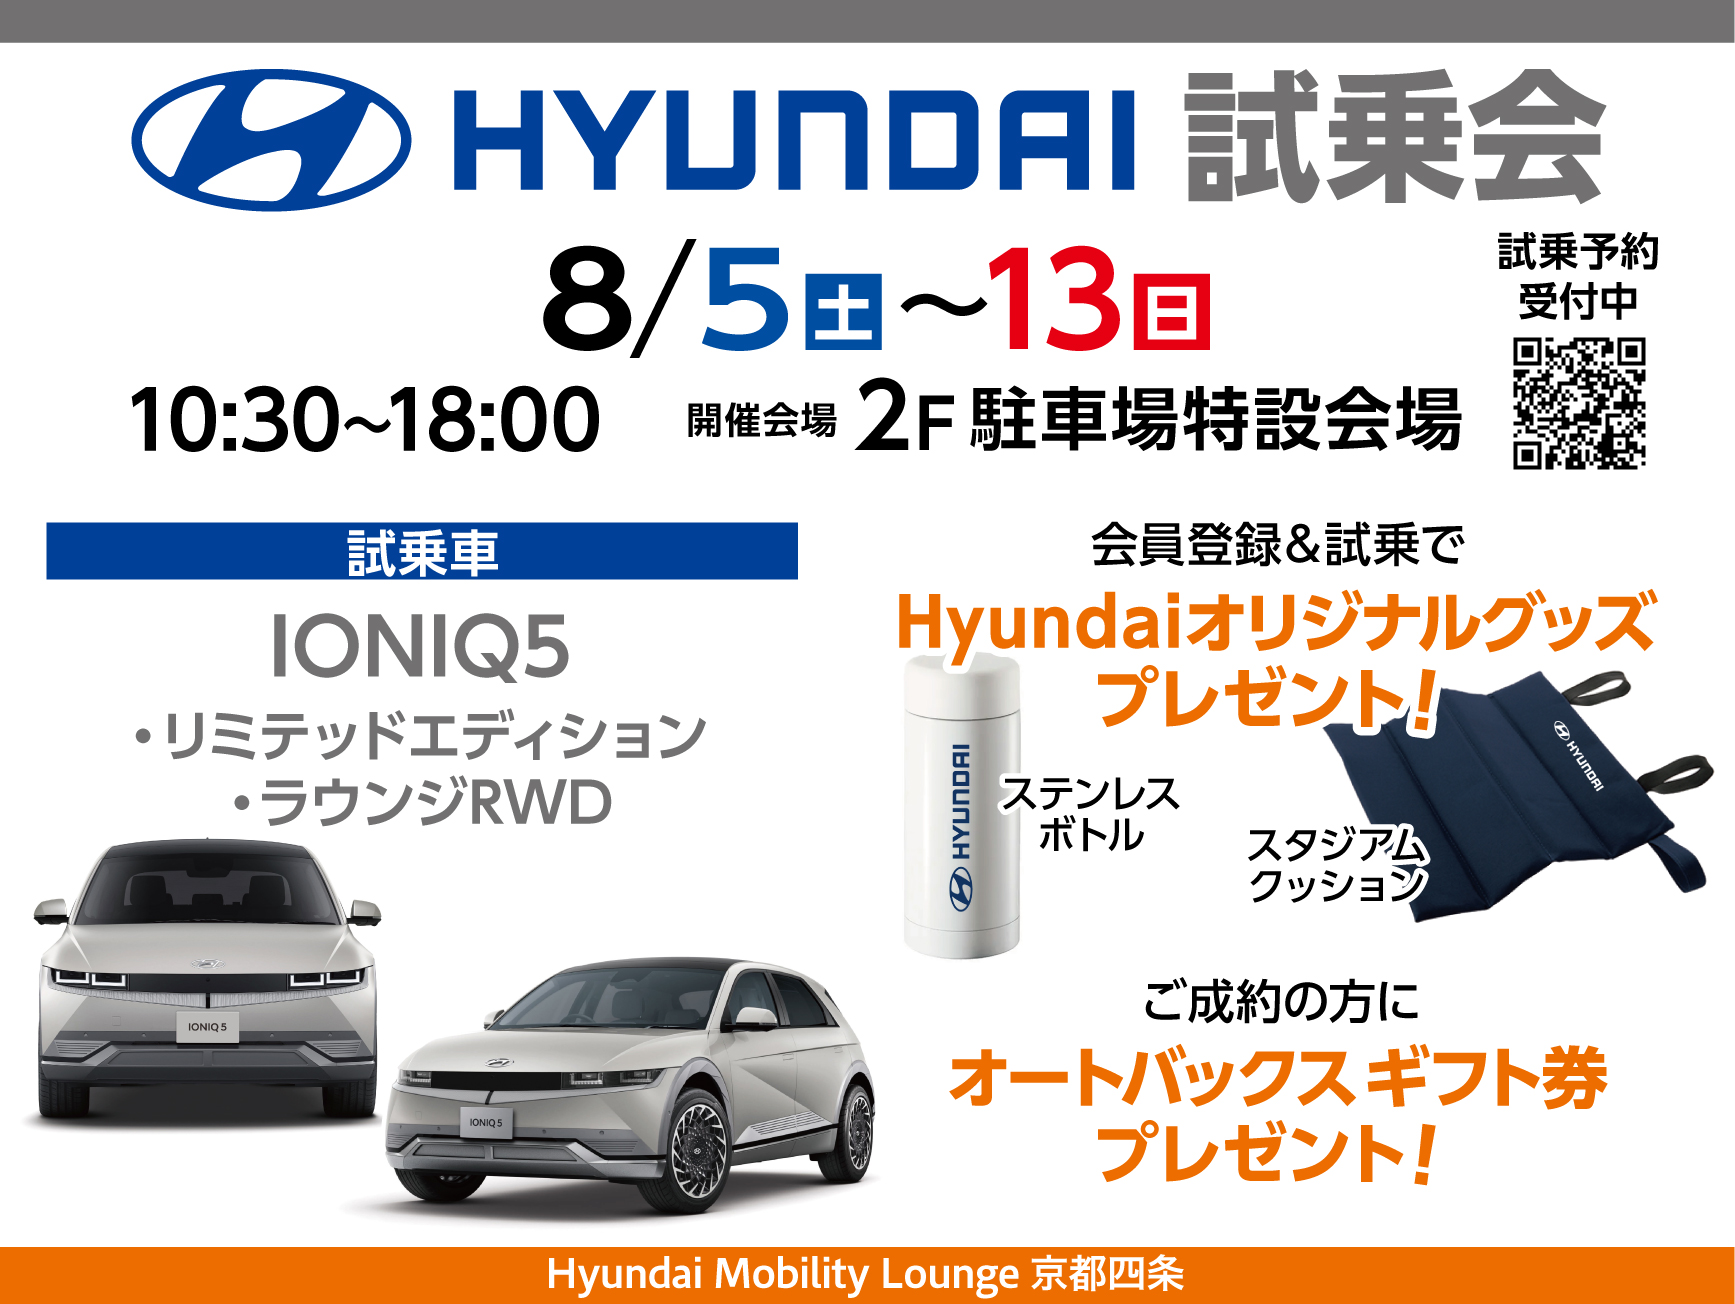 『Hyundai体感試乗会』ご好評につき追加開催いたします